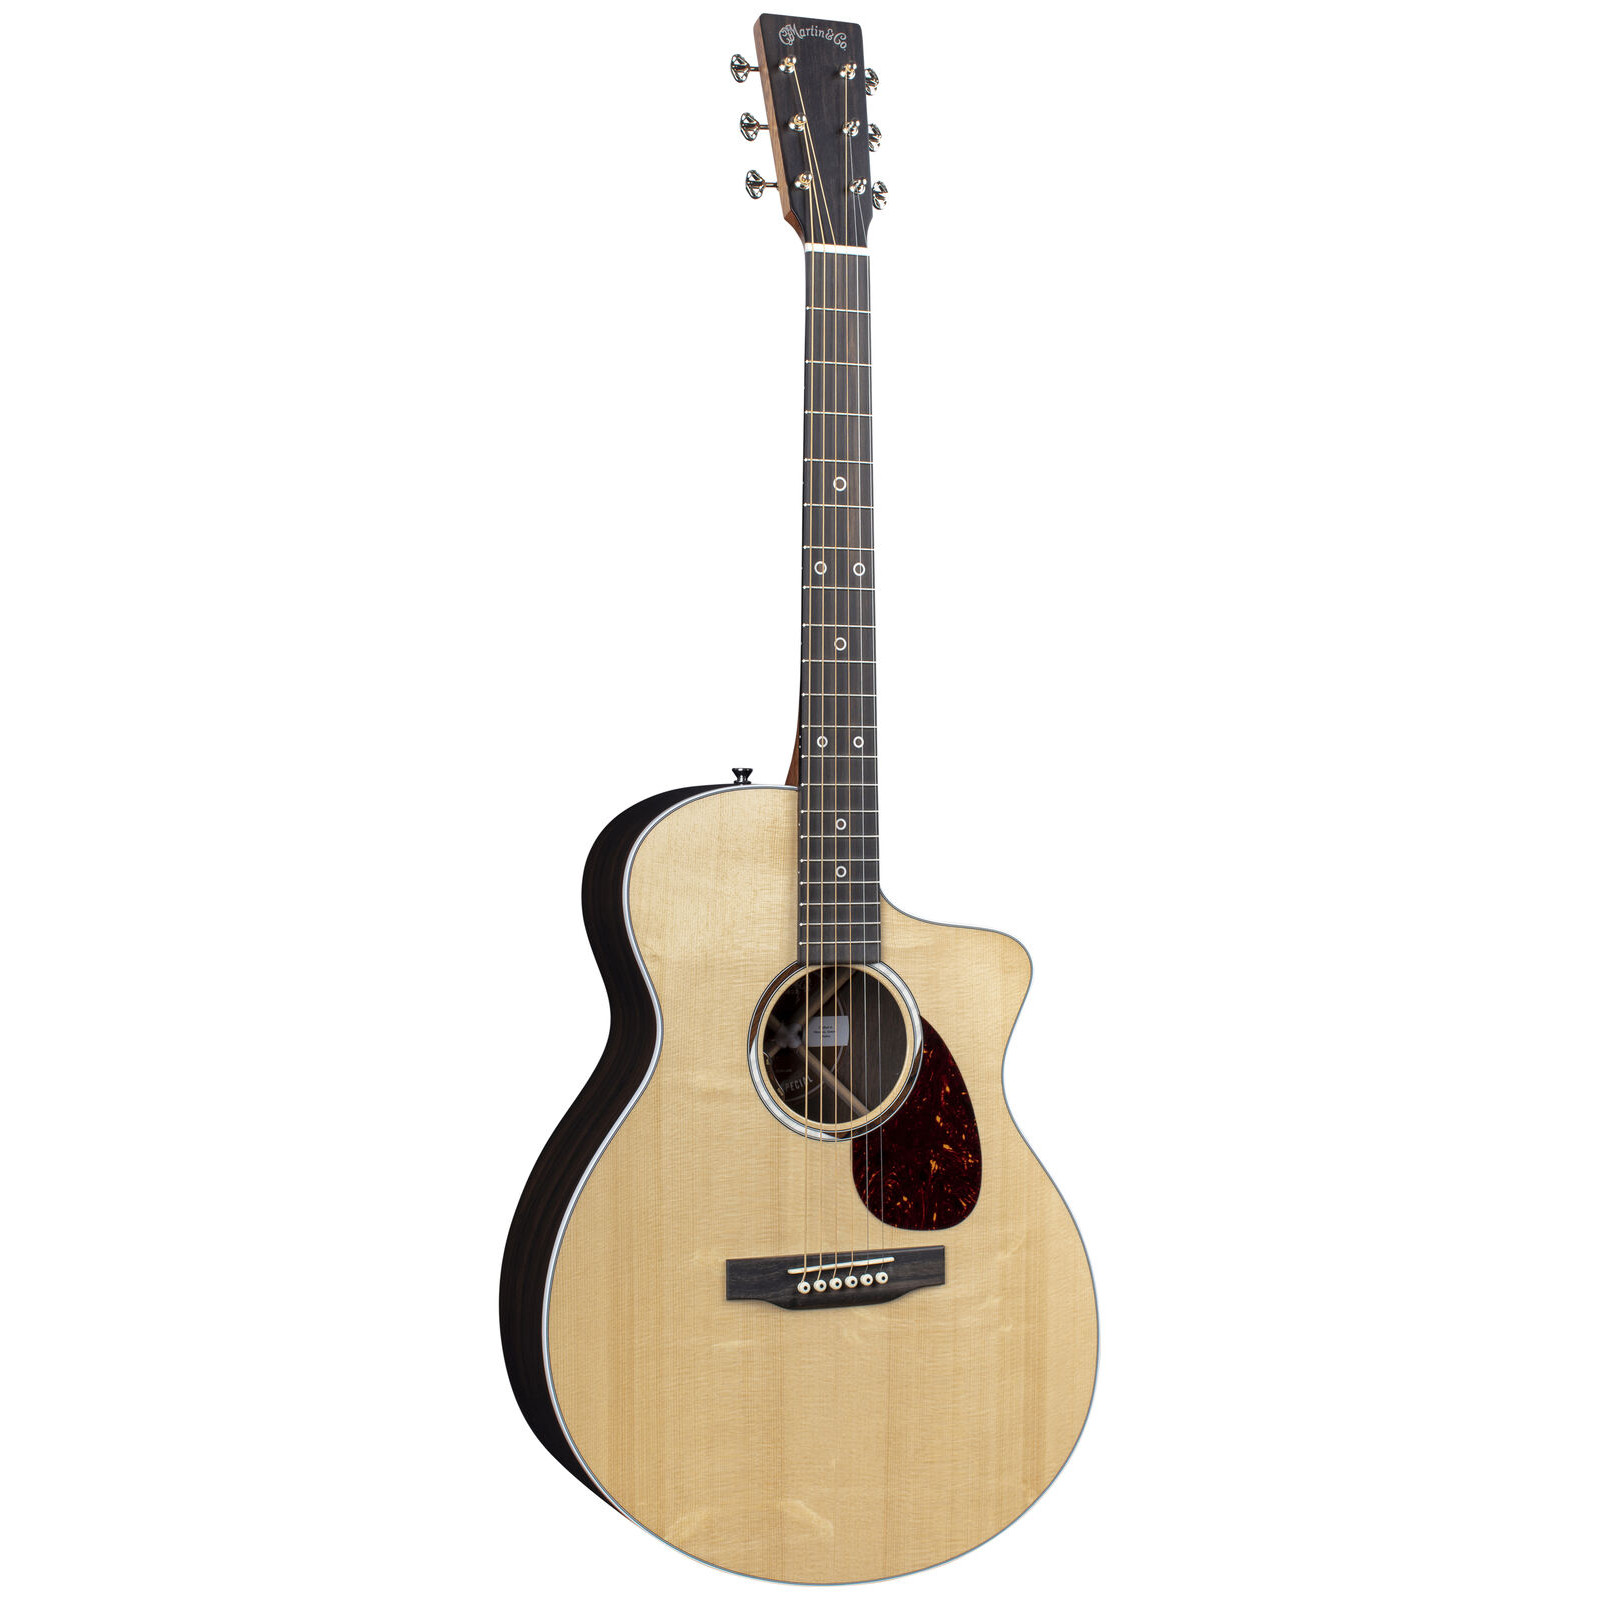 Martin SC-13E Special Guitar